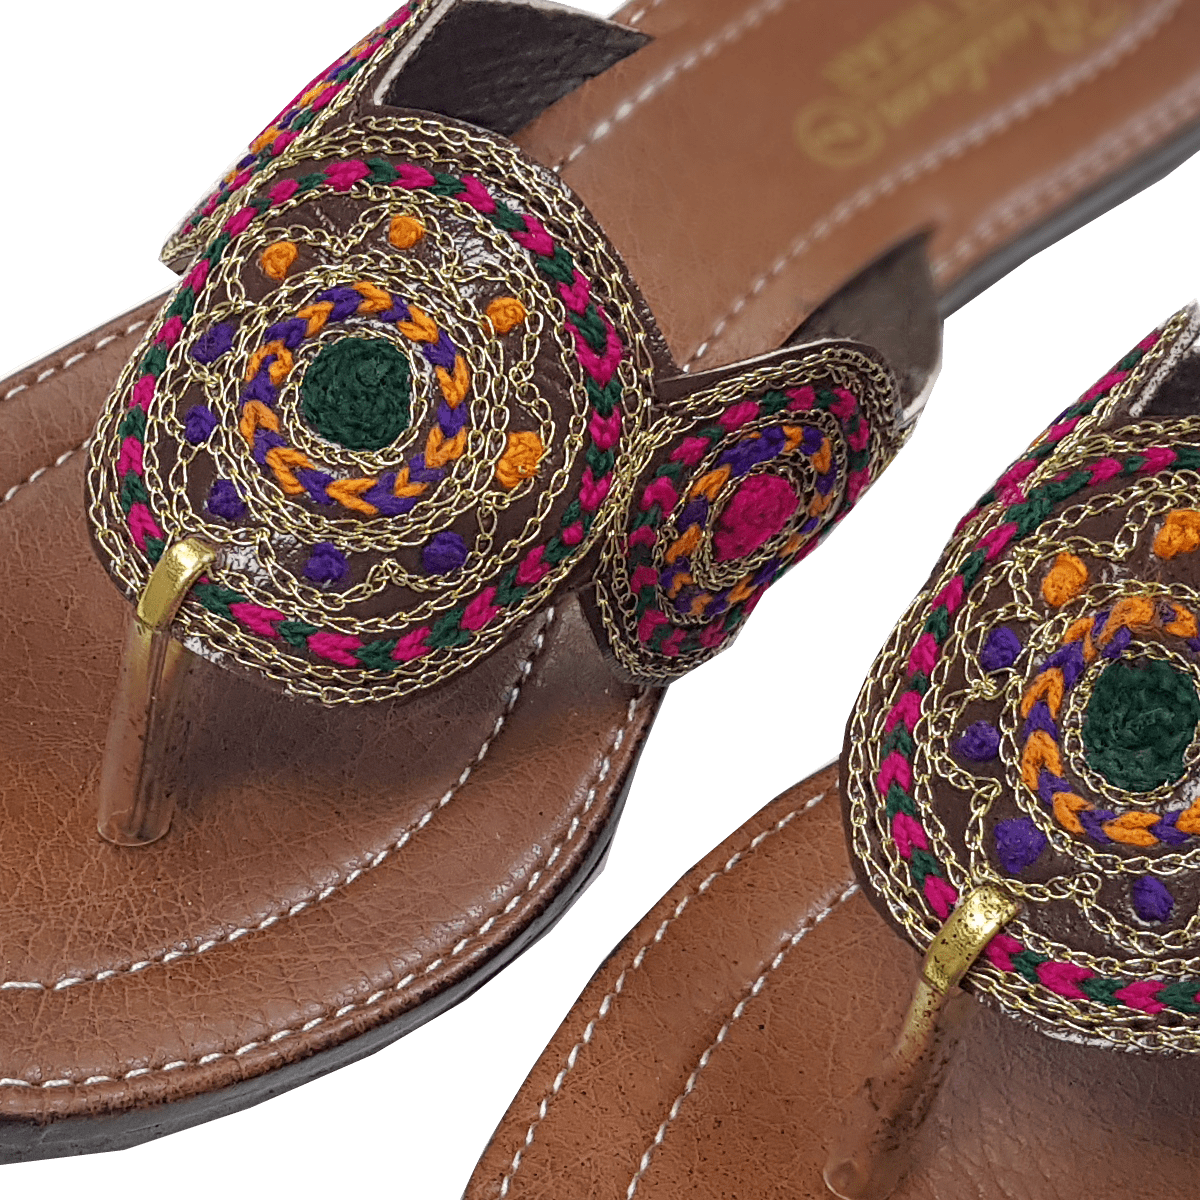 Pakistani Ladies Kolhapuri Leather Handmade Chappal / Sandal RD6